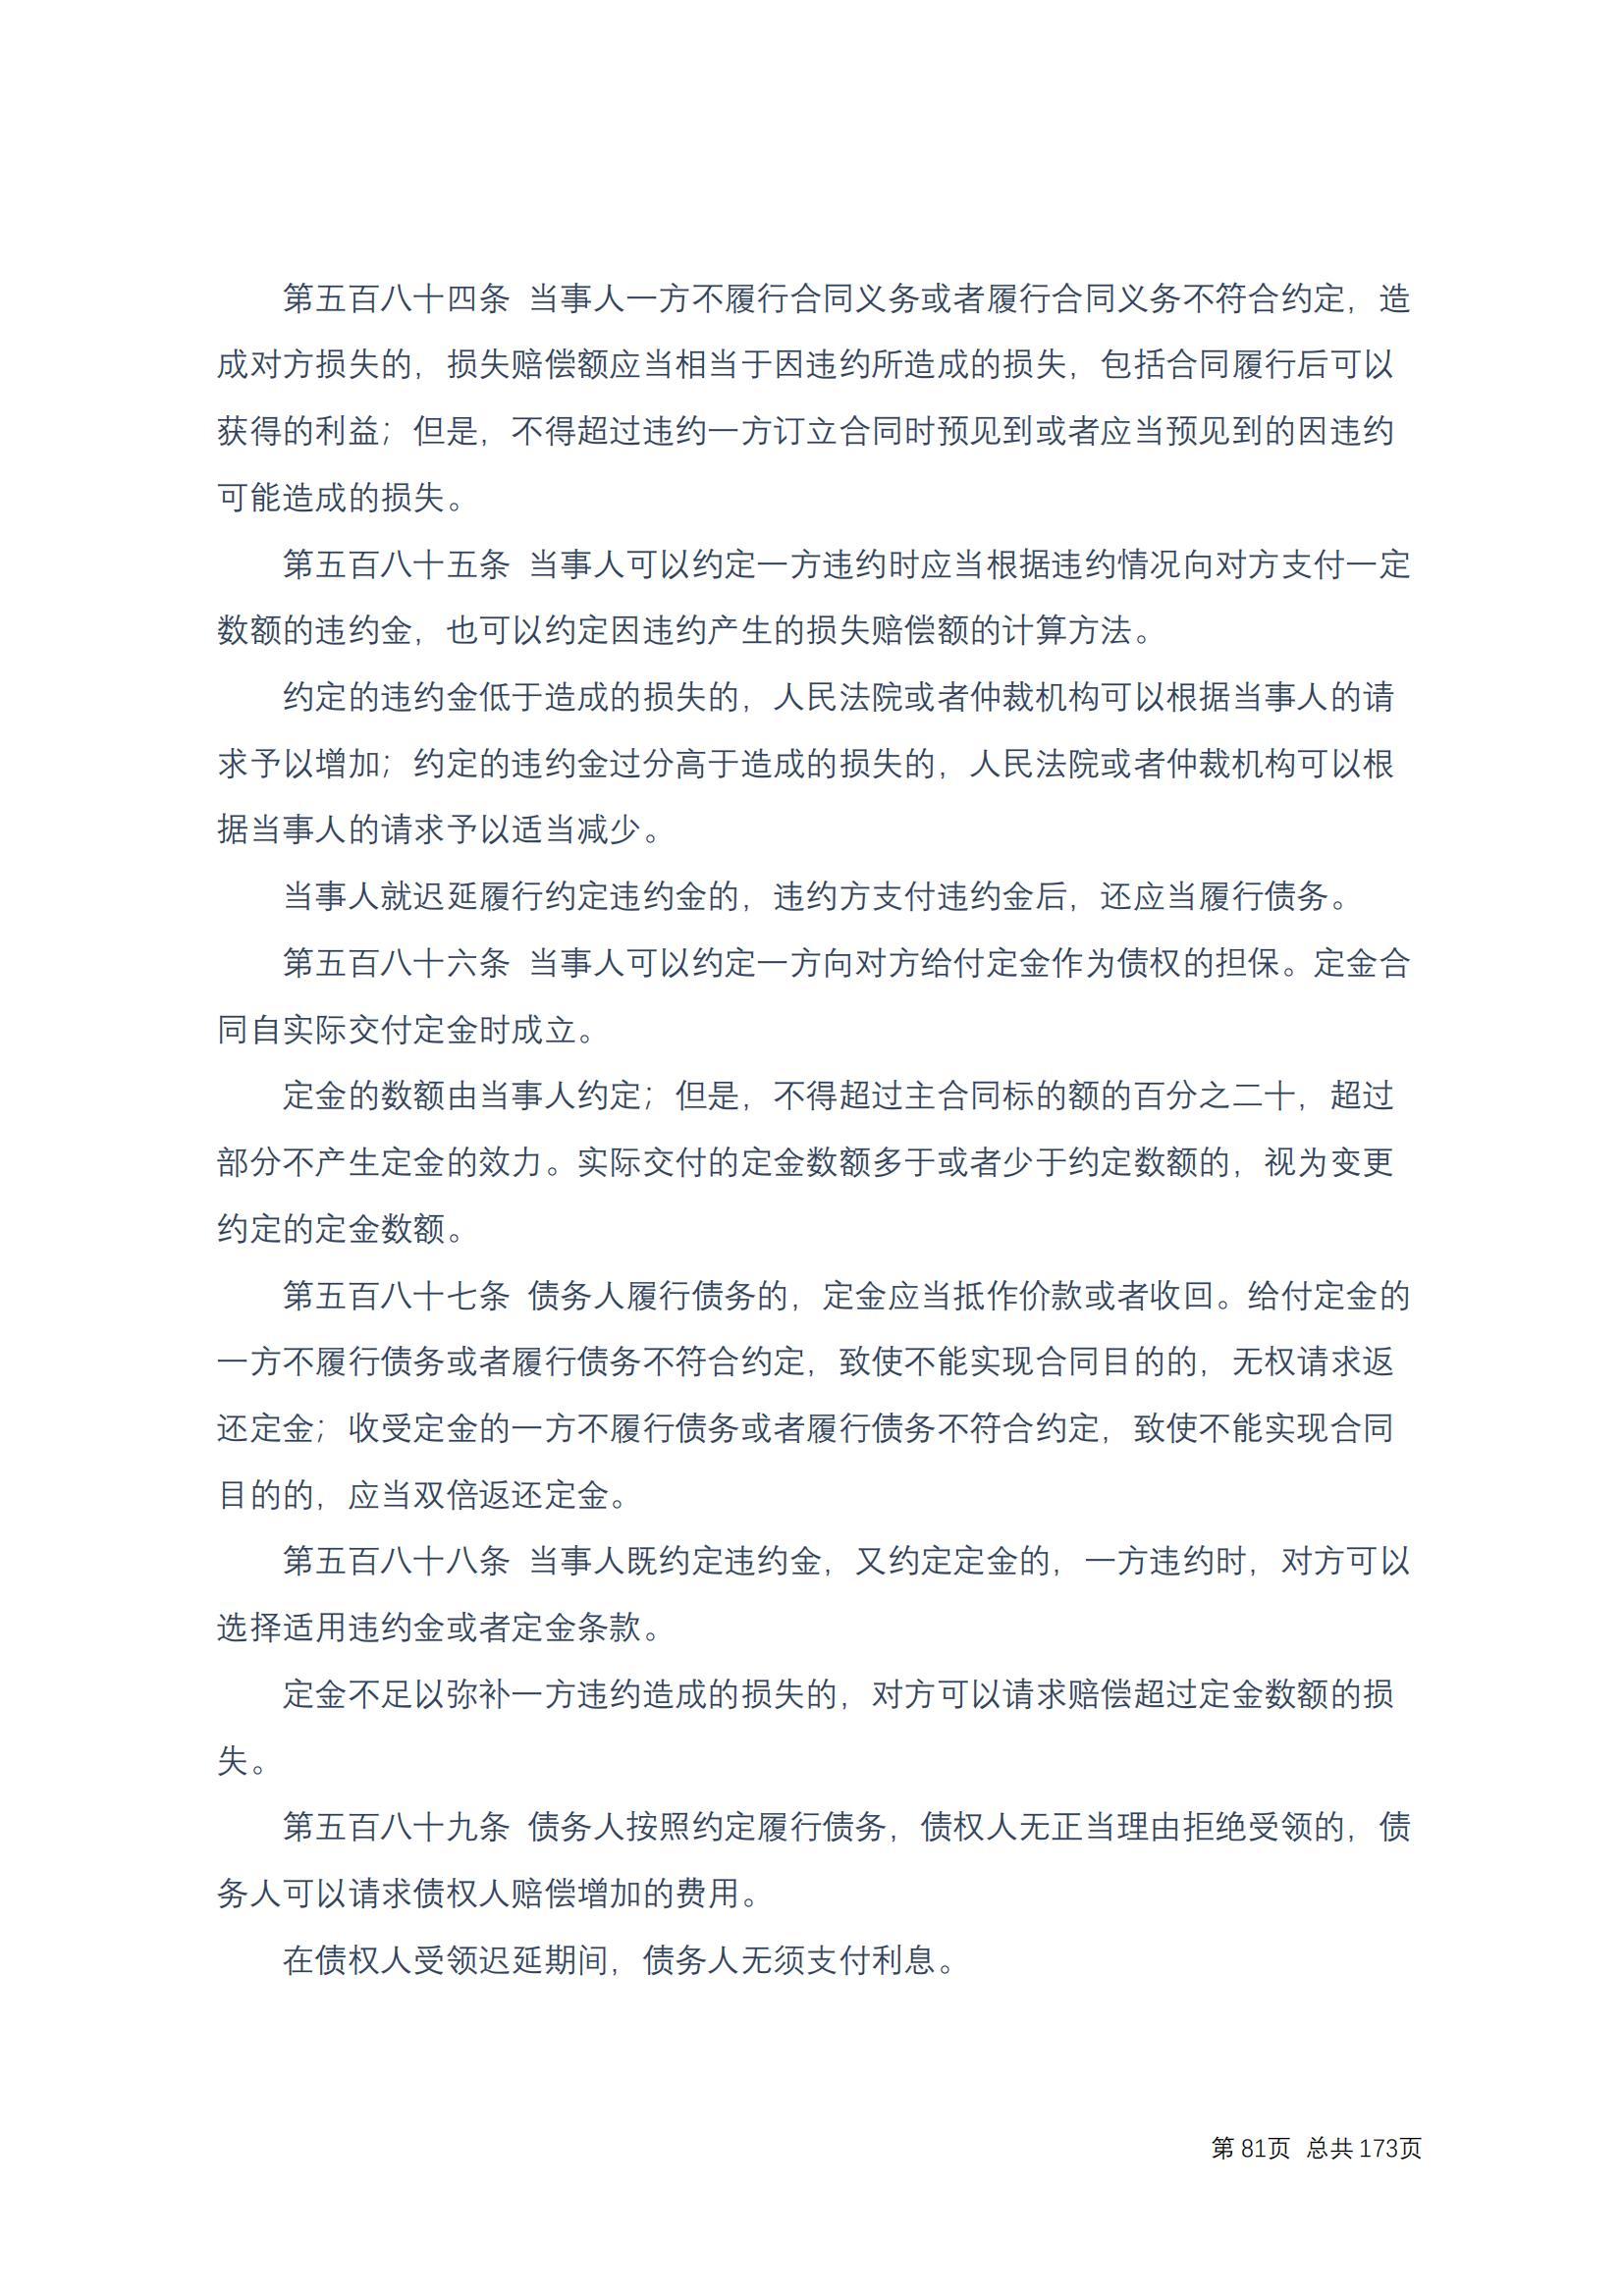 中华人民共和国民法典 修改过_80